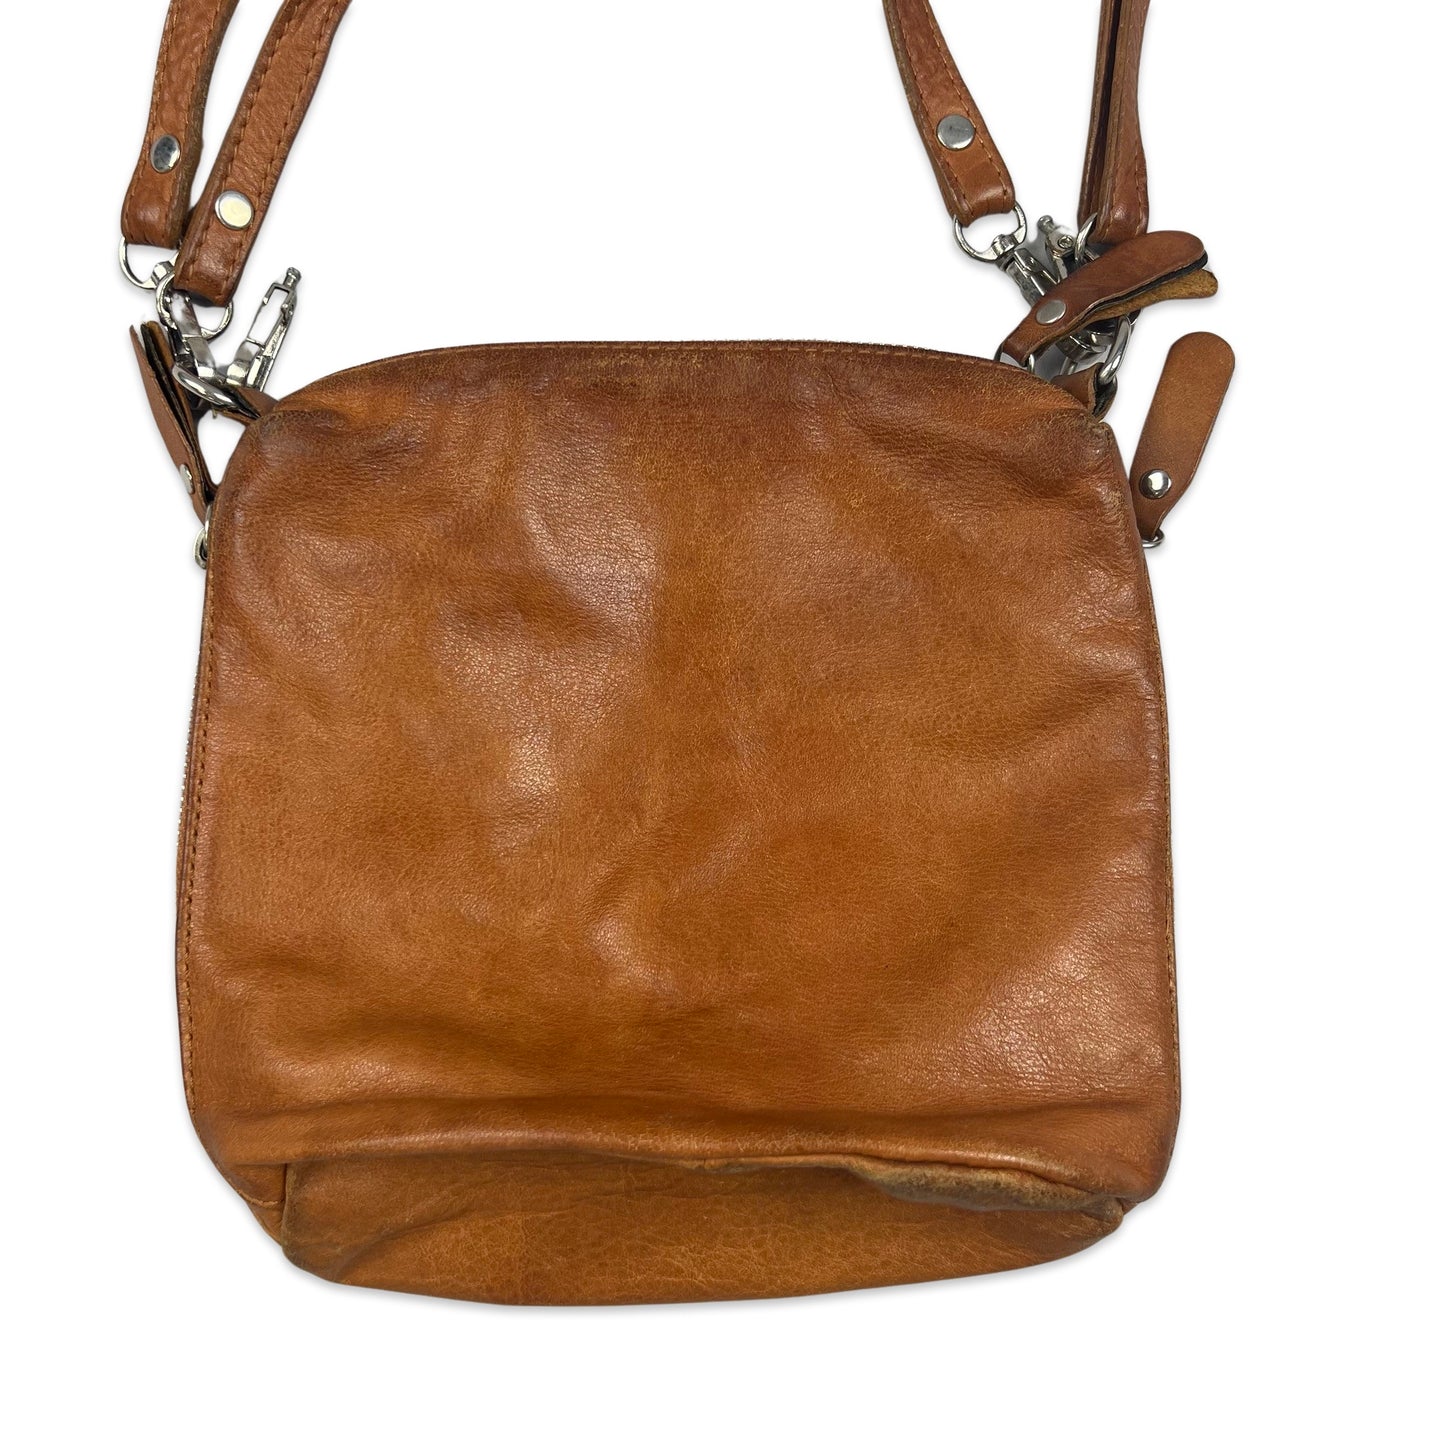 Vintage Tan Leather Bucket Handbag